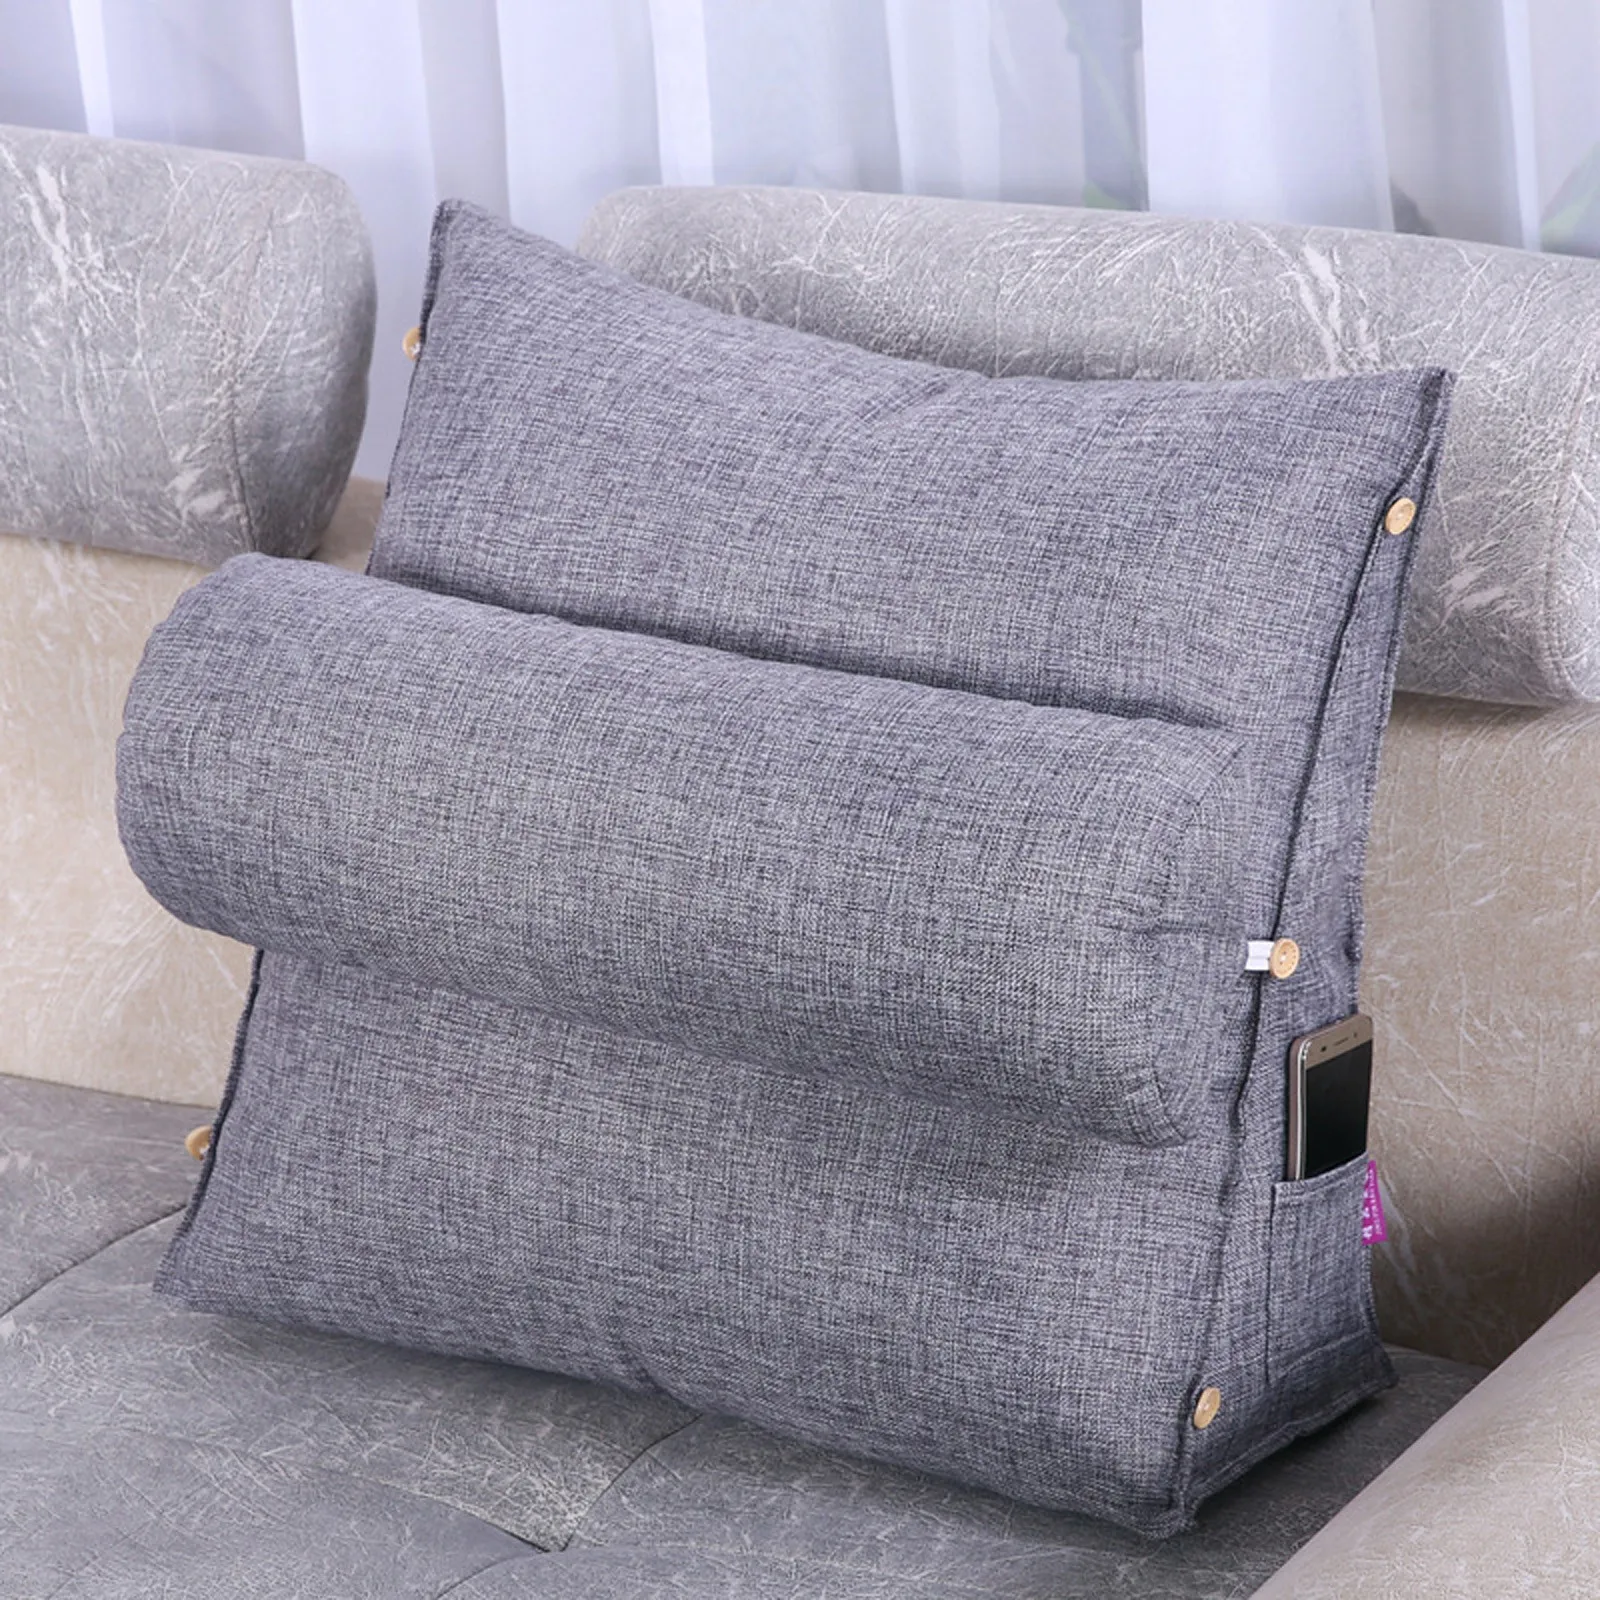 

Reading Cushion Back Cushion Backrest Wedge Cushion For Sofa / Chair Home Organizer для дома полезные вещи товари для дому